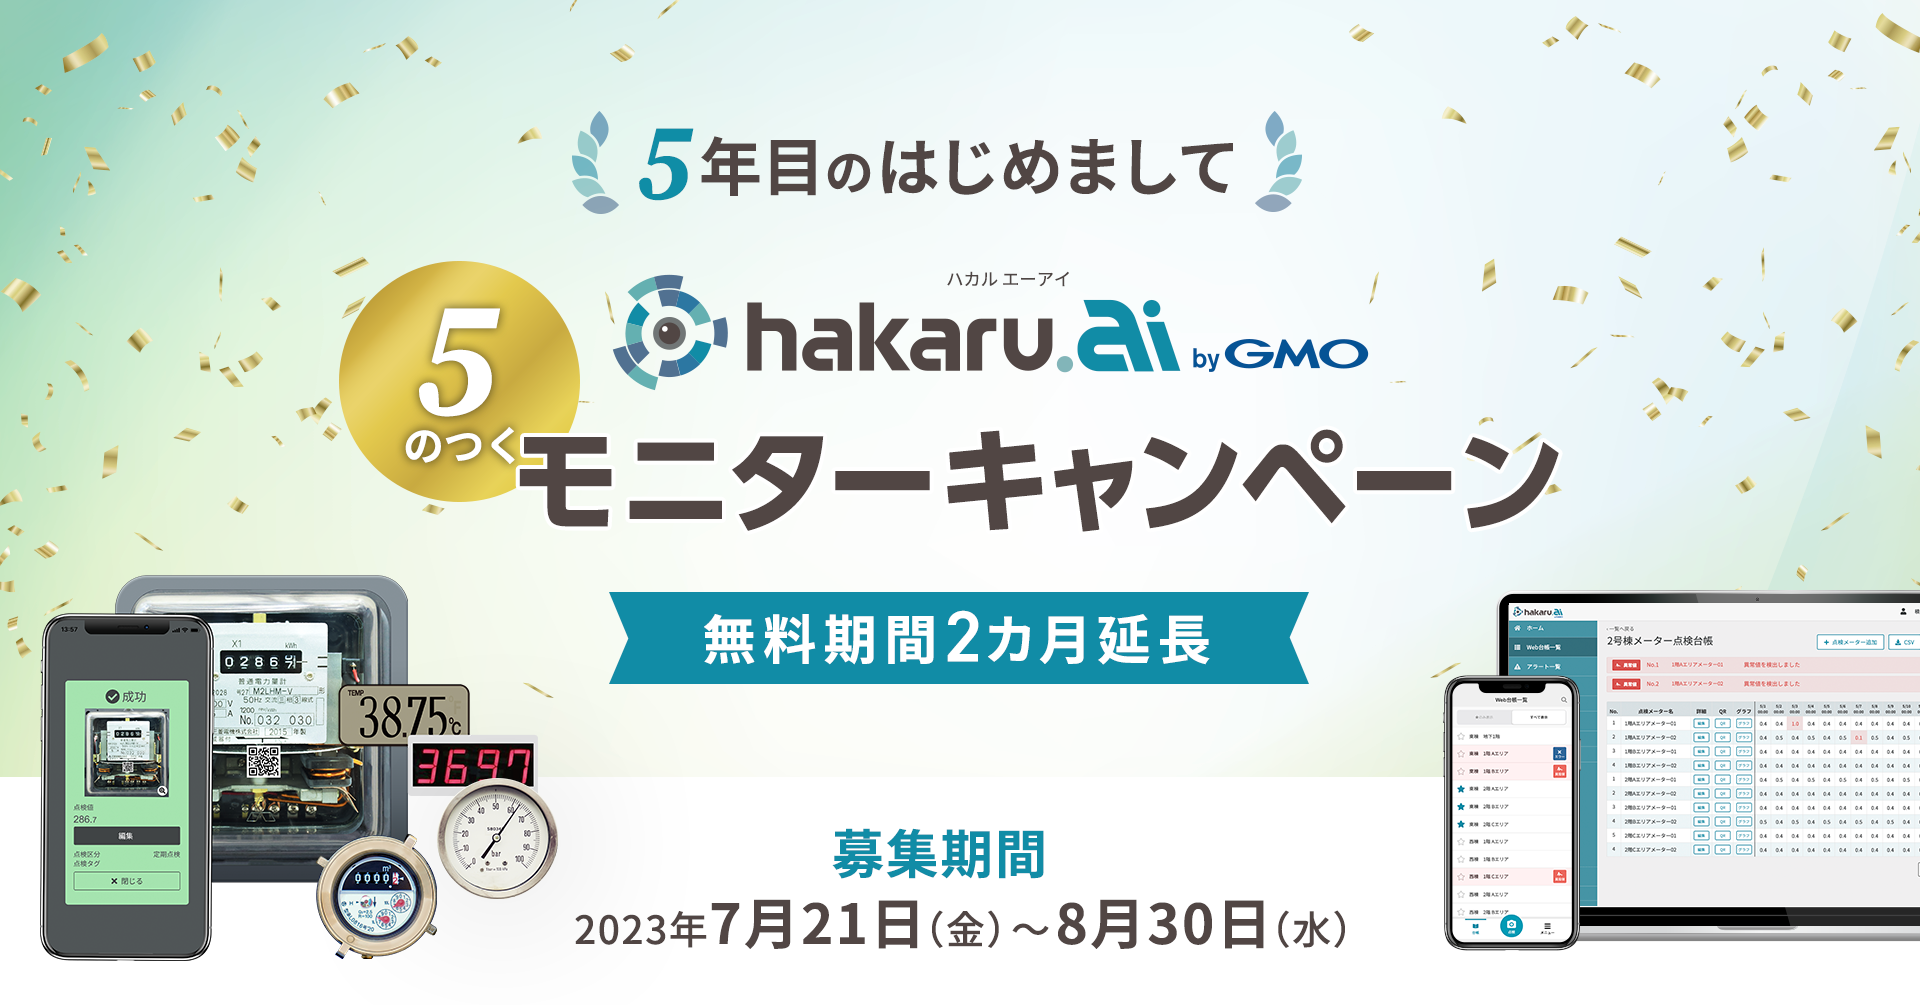 検針・点検の業務改善サービス「hakaru.ai byGMO」が5周年！ 新規利用